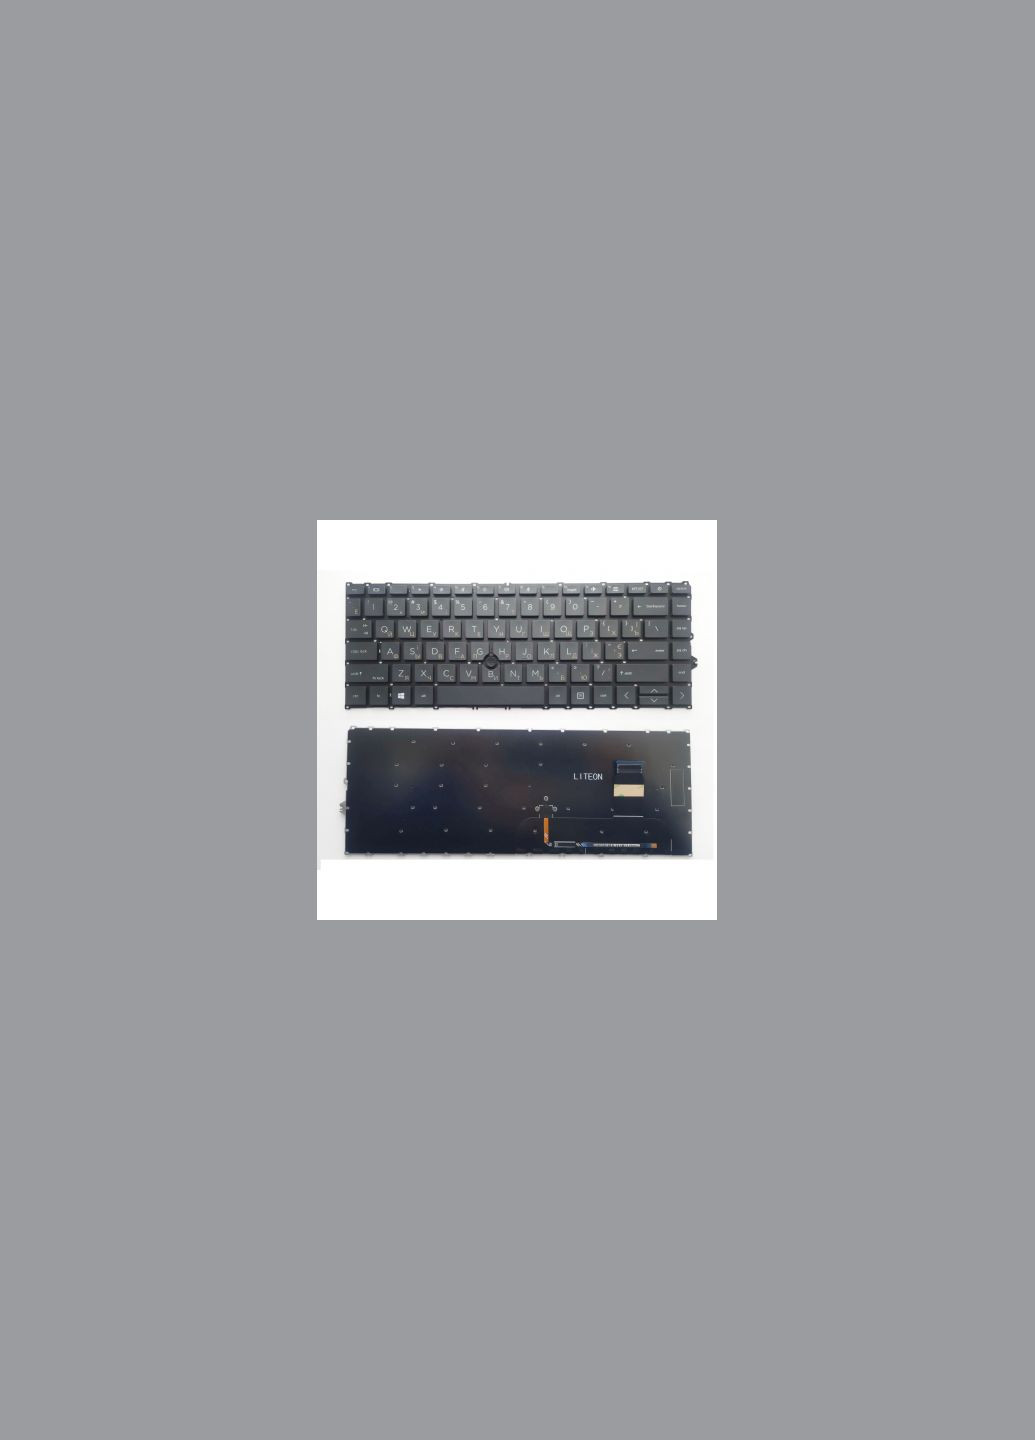 Клавиатура ноутбука EliteBook 745 G7/G8, 840 G7/G8 черна з ТП UA (A46209) HP elitebook 745 g7/g8, 840 g7/g8 черна з тп ua (278368756)